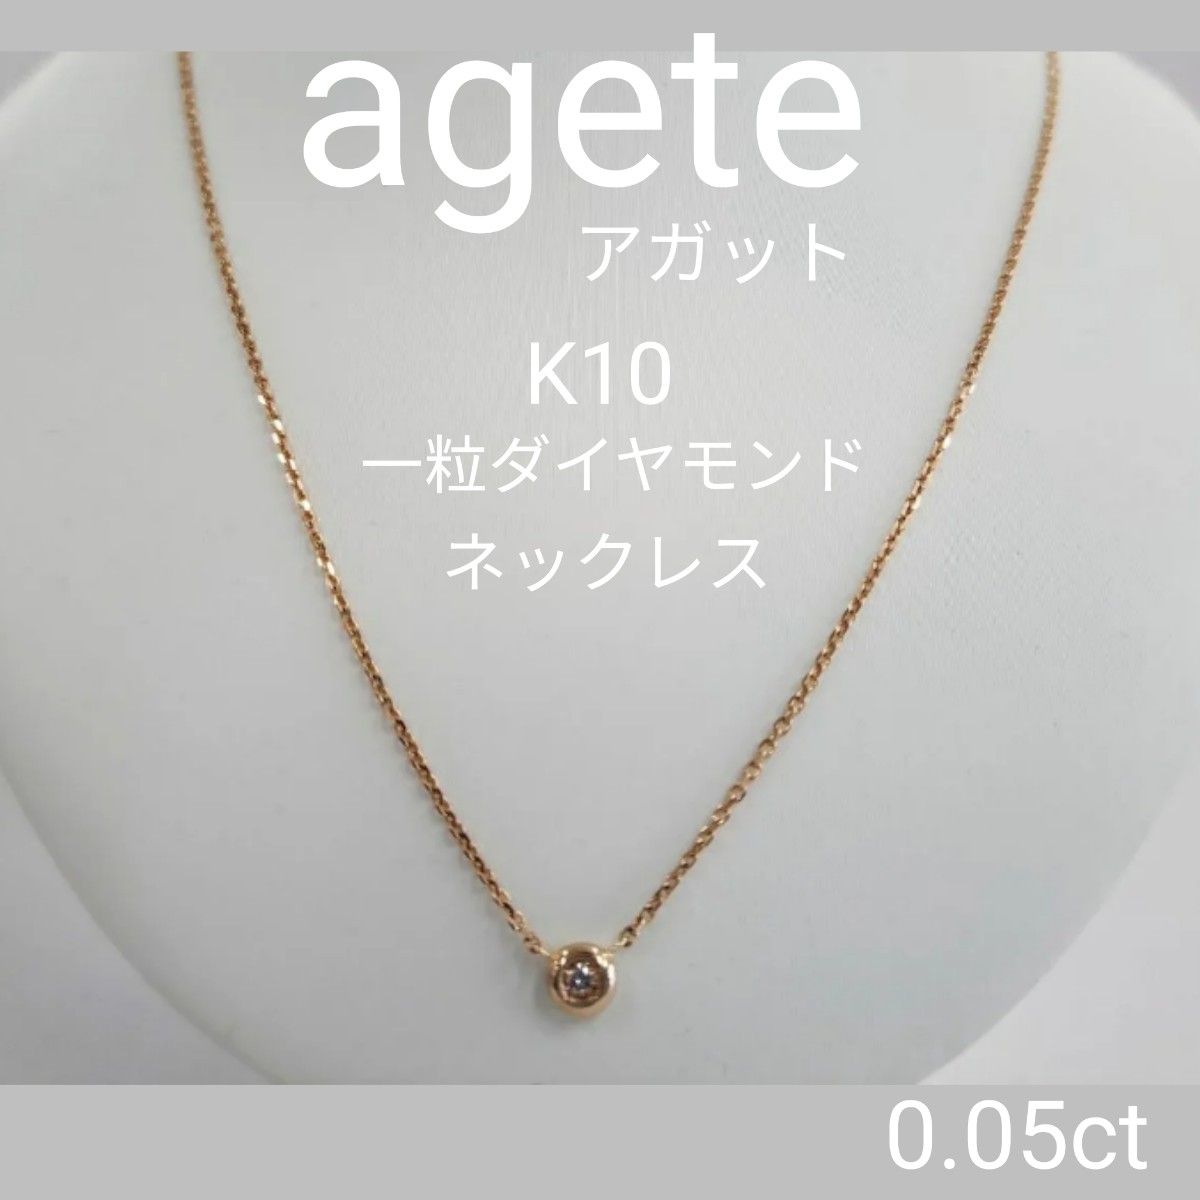 agete   ネックレス  一粒ダイヤモンド  アガット K10 ネックレス イエローゴールド YG  ダイヤモンドネックレス